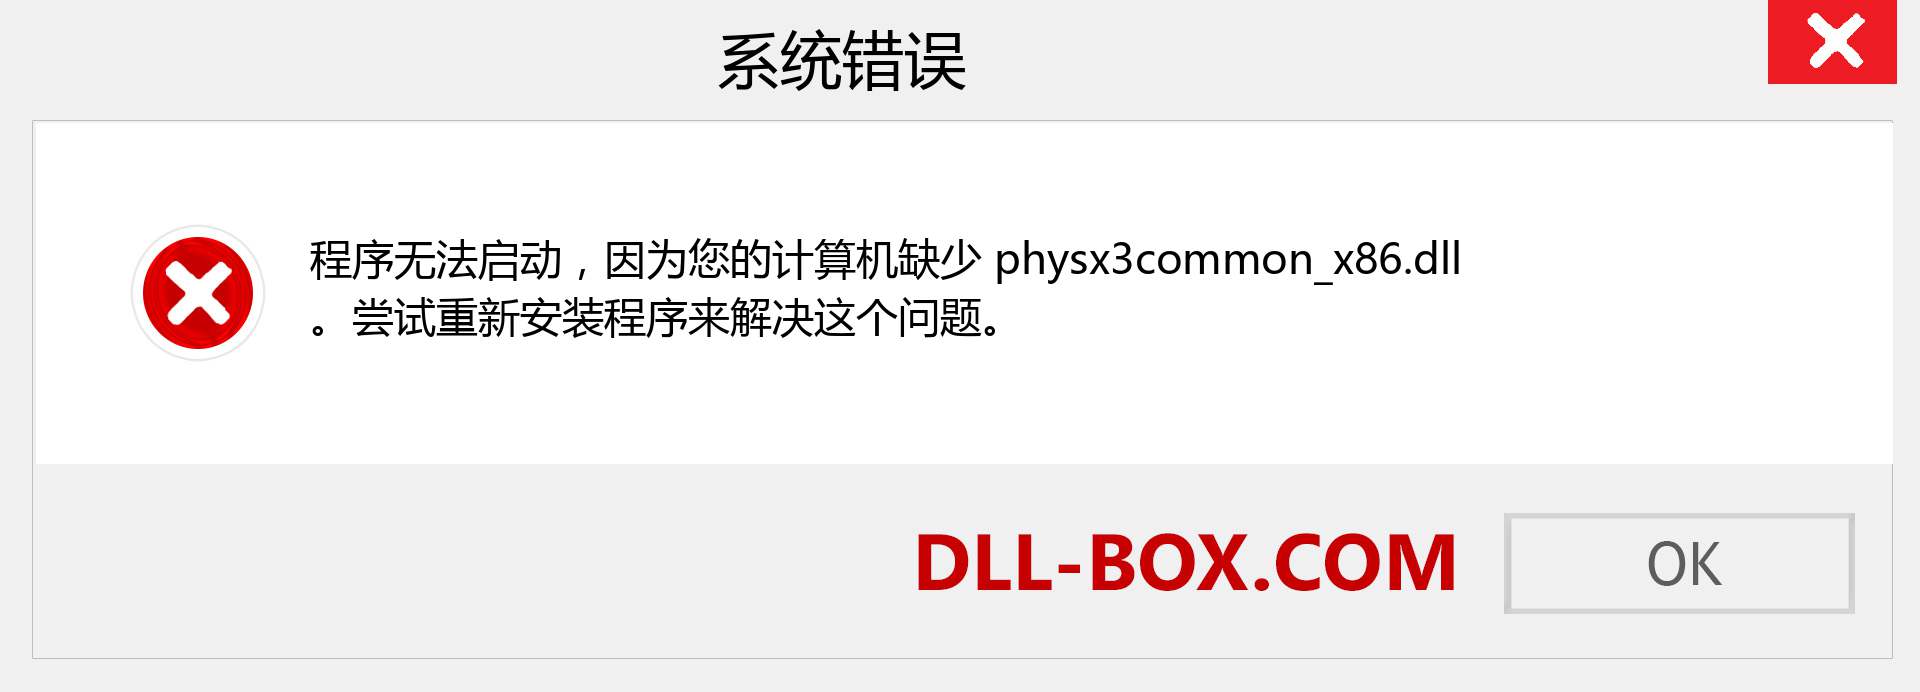 physx3common_x86.dll 文件丢失？。 适用于 Windows 7、8、10 的下载 - 修复 Windows、照片、图像上的 physx3common_x86 dll 丢失错误